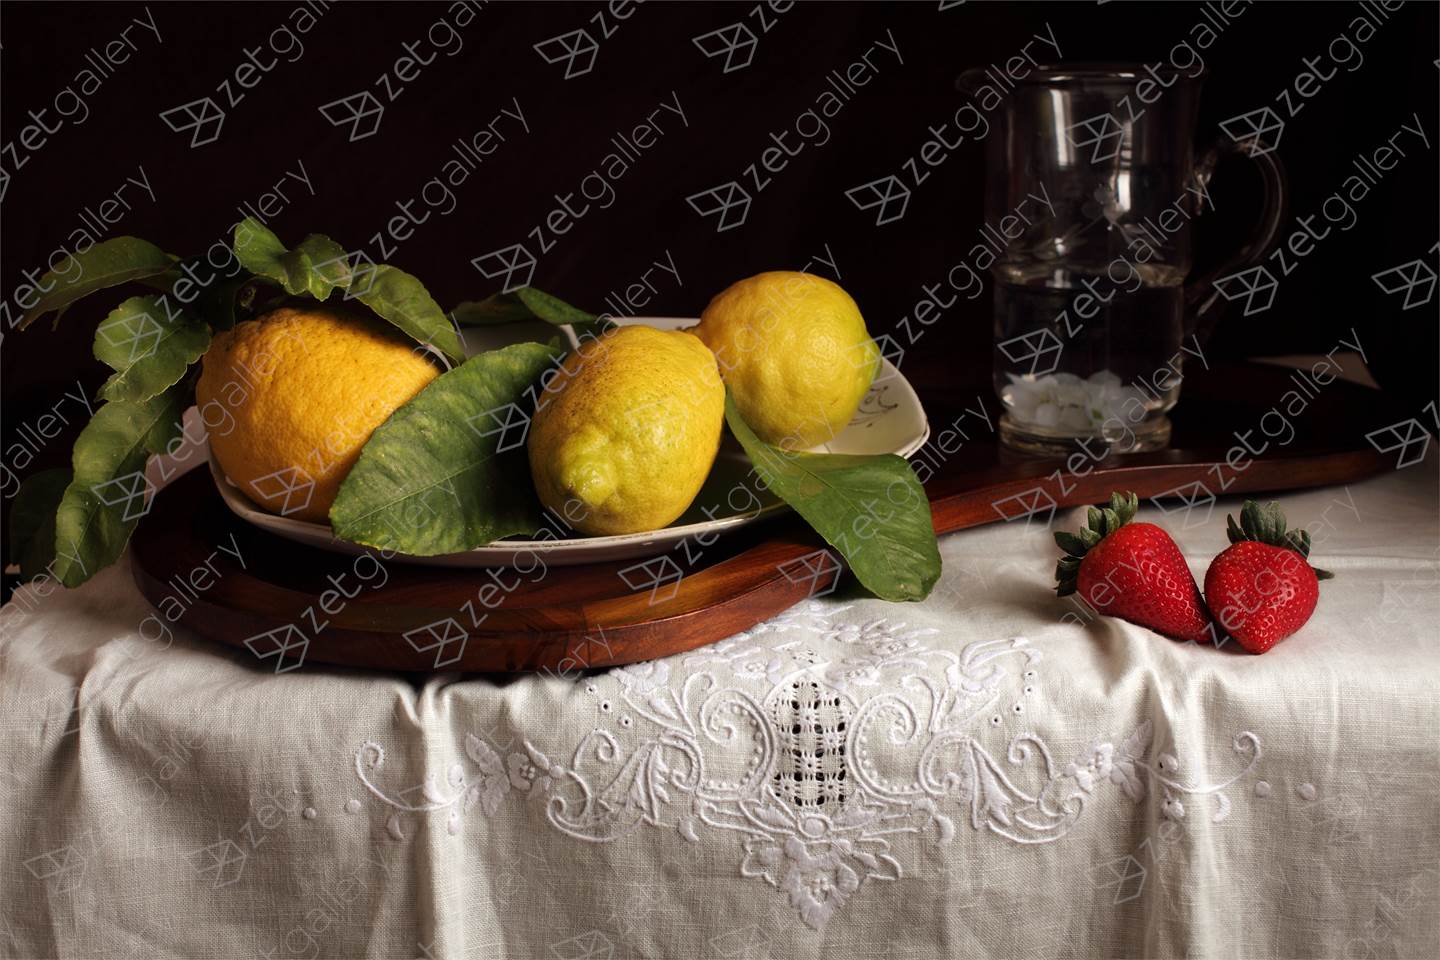 Bodegón de los limones y las fresas, Fotografia Digital Natureza Morta original por Cecilia Gilabert